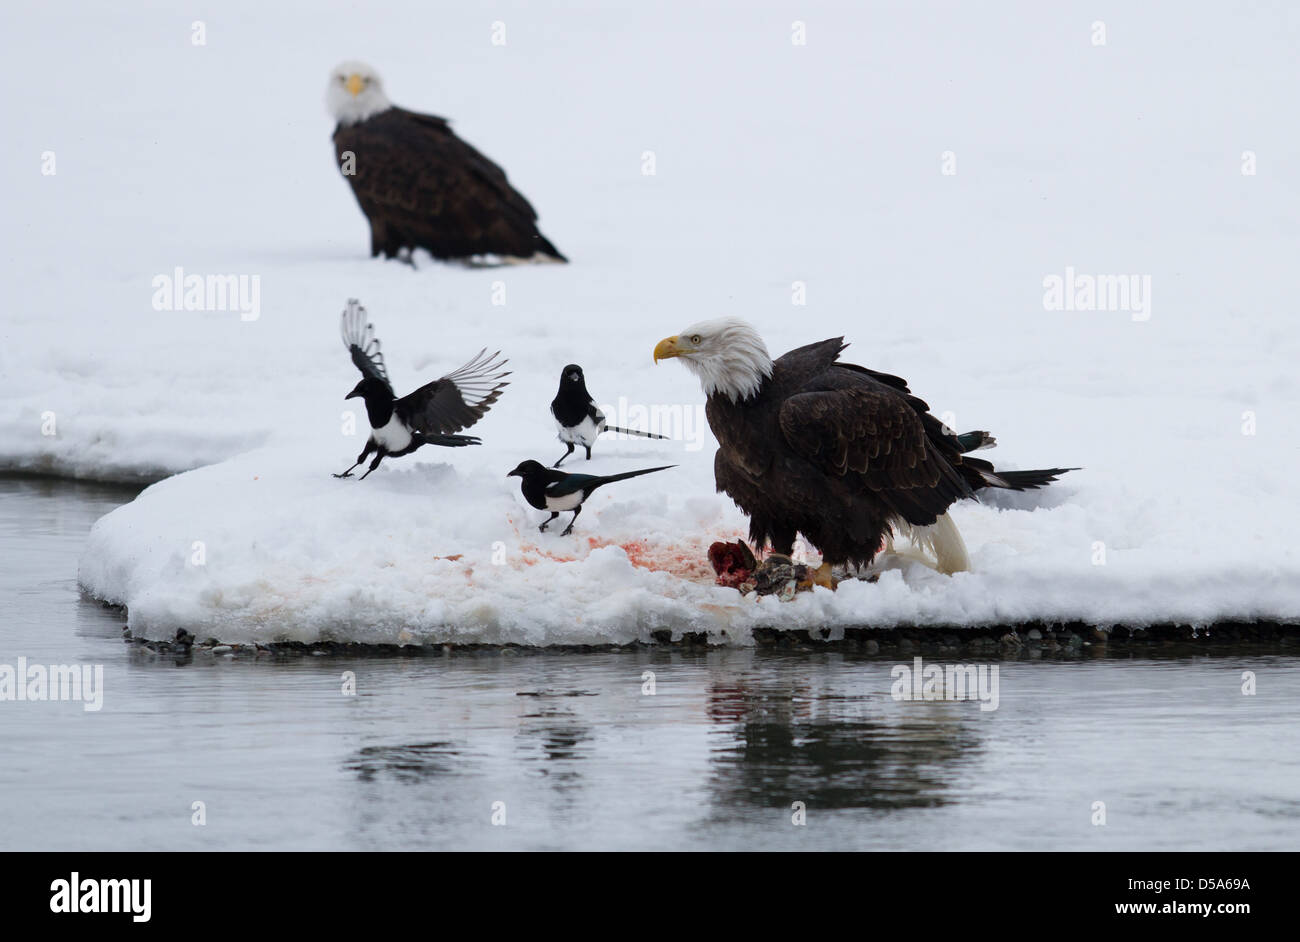 Bald eagle feeding on salmon whilst magpies wait their turn Stock Photo